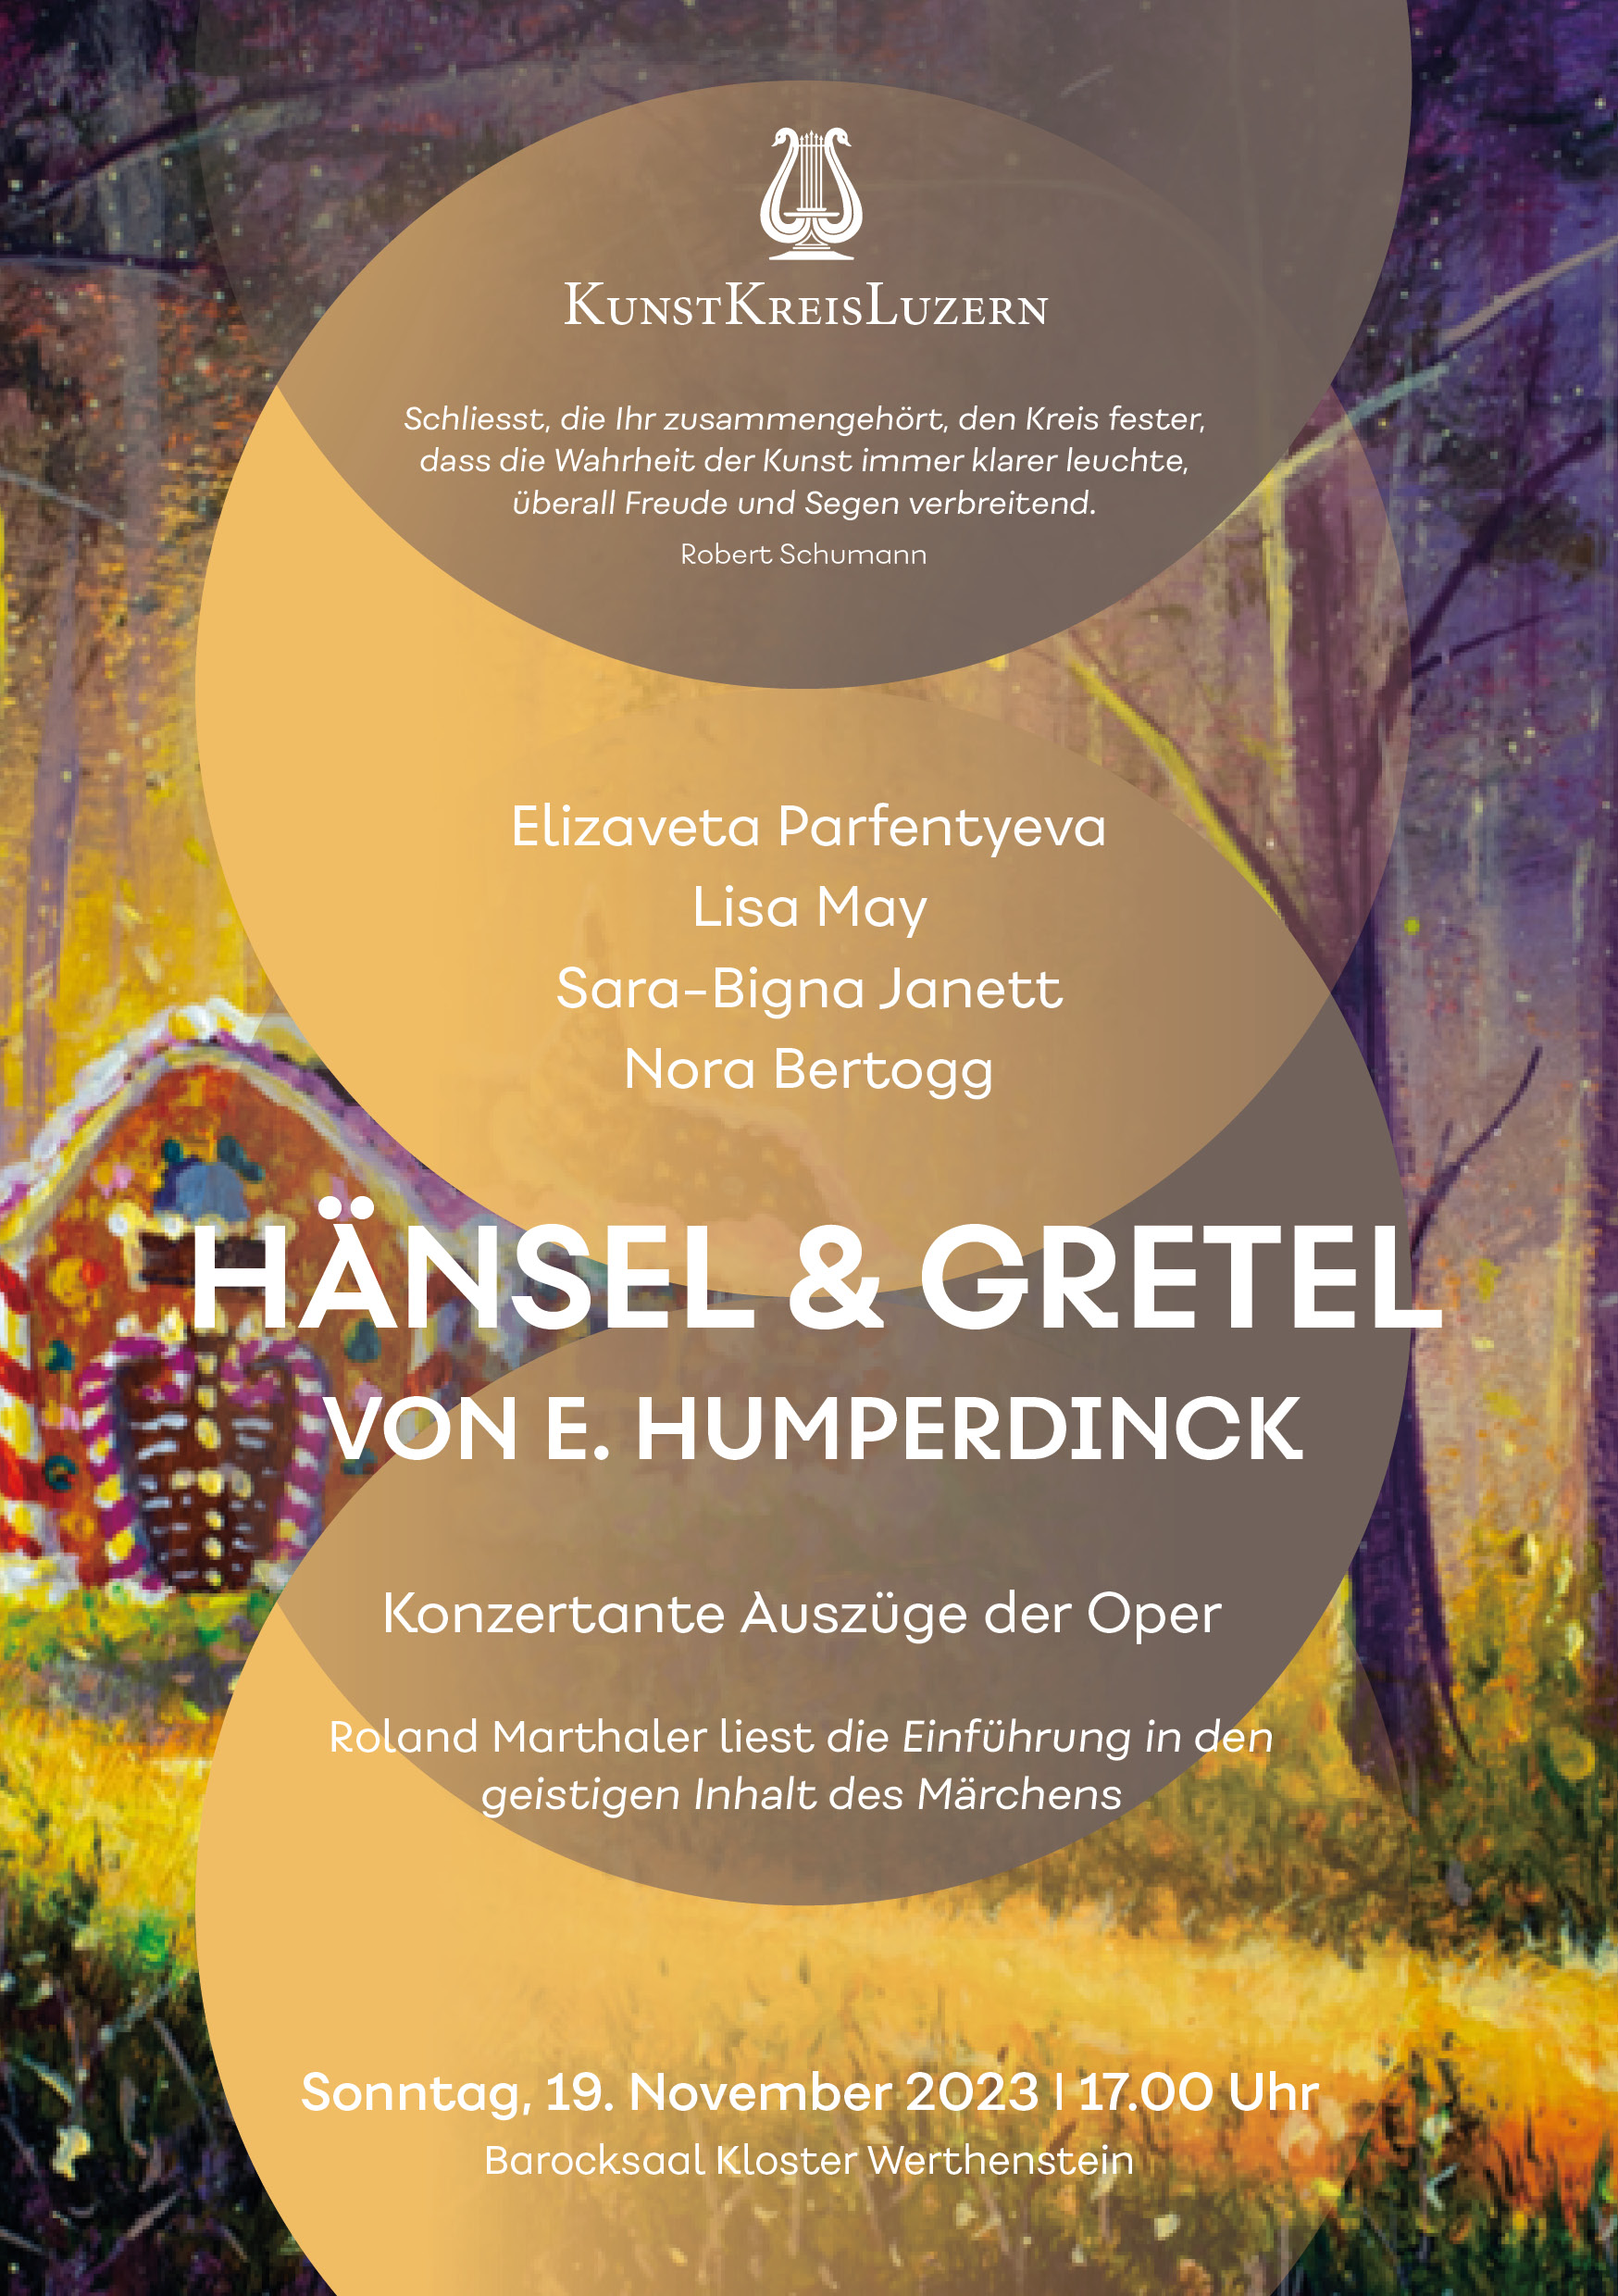 Hänsel und Gretel Flyer Veranstaltung KunstKreisLuzern